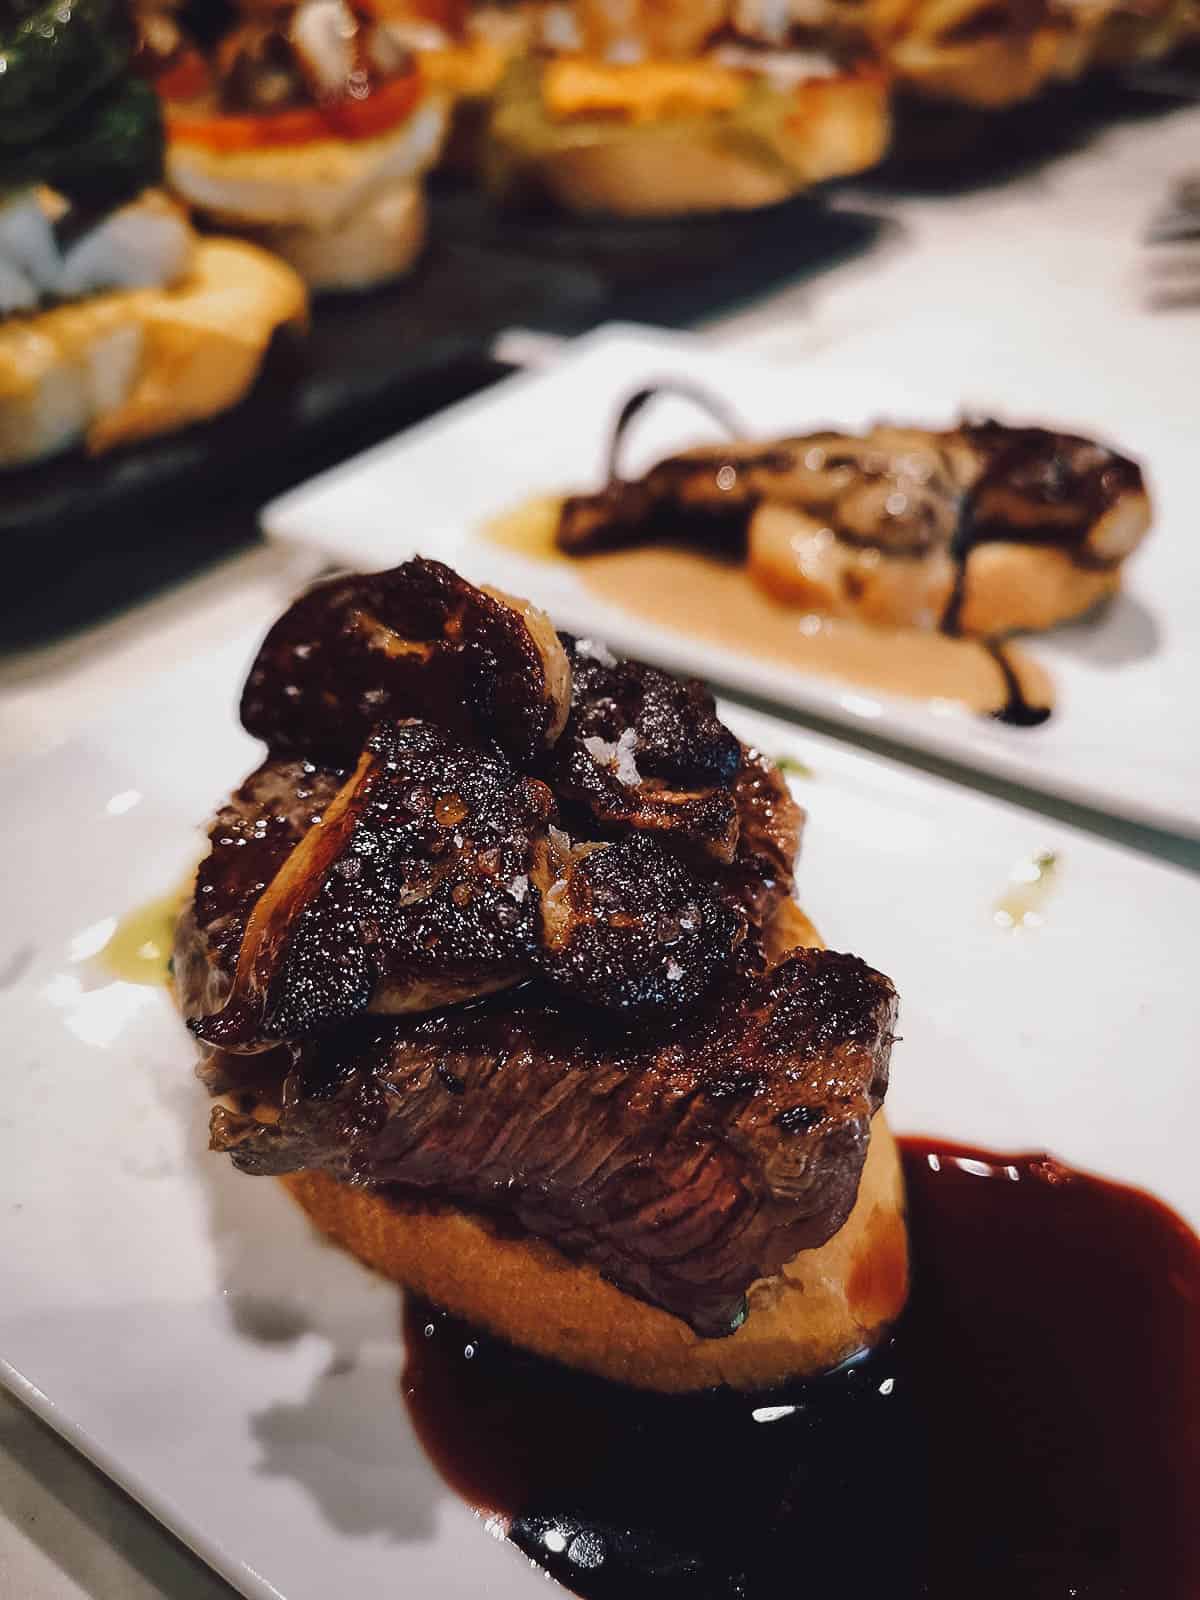 Foie gras with steak pintxos